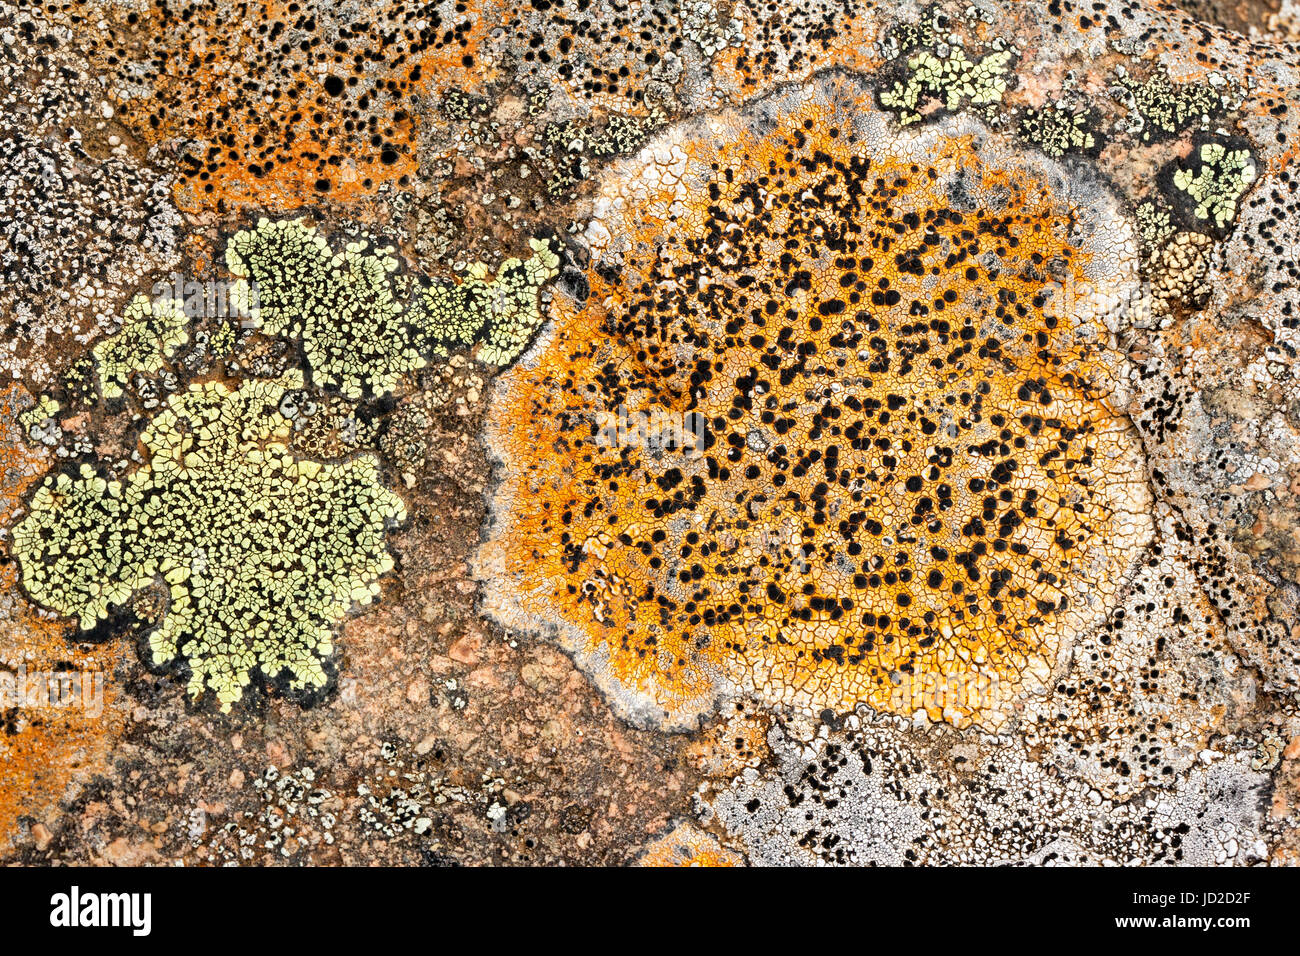 Lichen sur les roches colorées - Tablelands, Gros Morne National Park, près de Woody Point, Terre-Neuve, Canada Banque D'Images